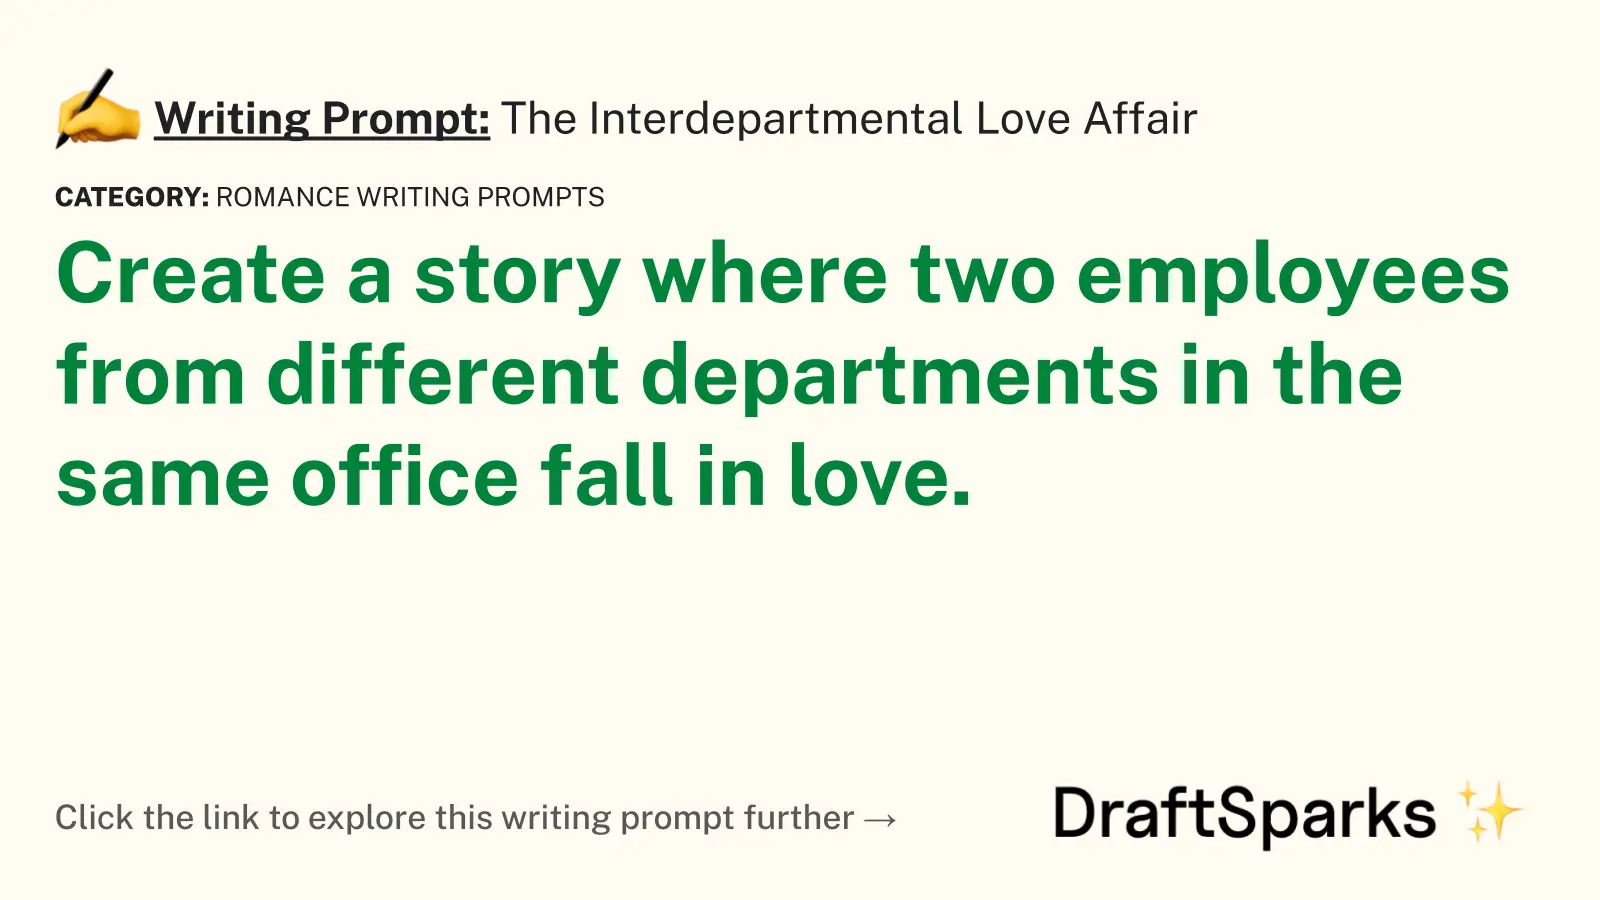 The Interdepartmental Love Affair